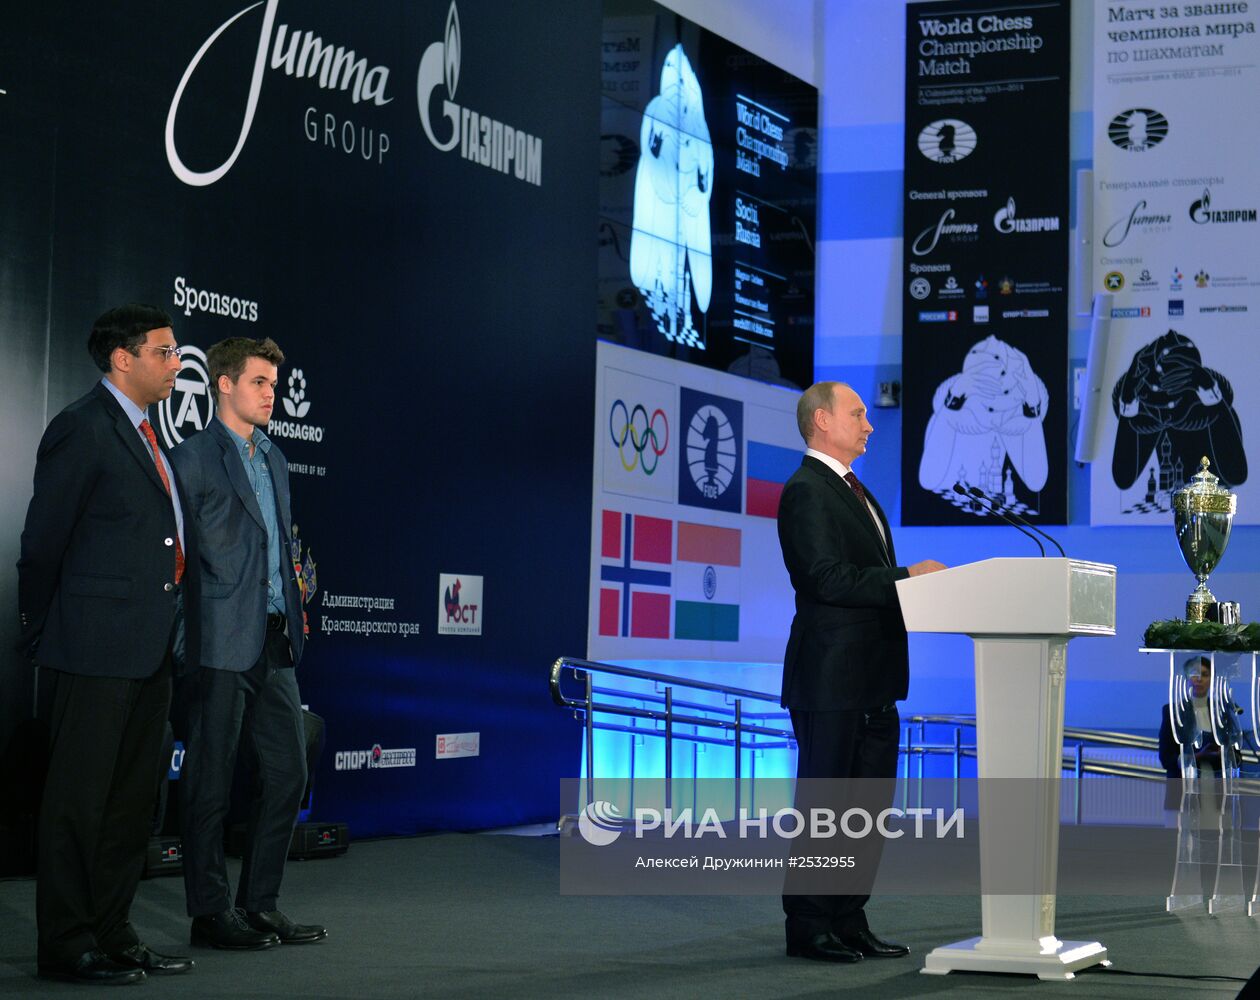 В.Путин принял участие в церемонии награждения чемпиона мира по шахматам